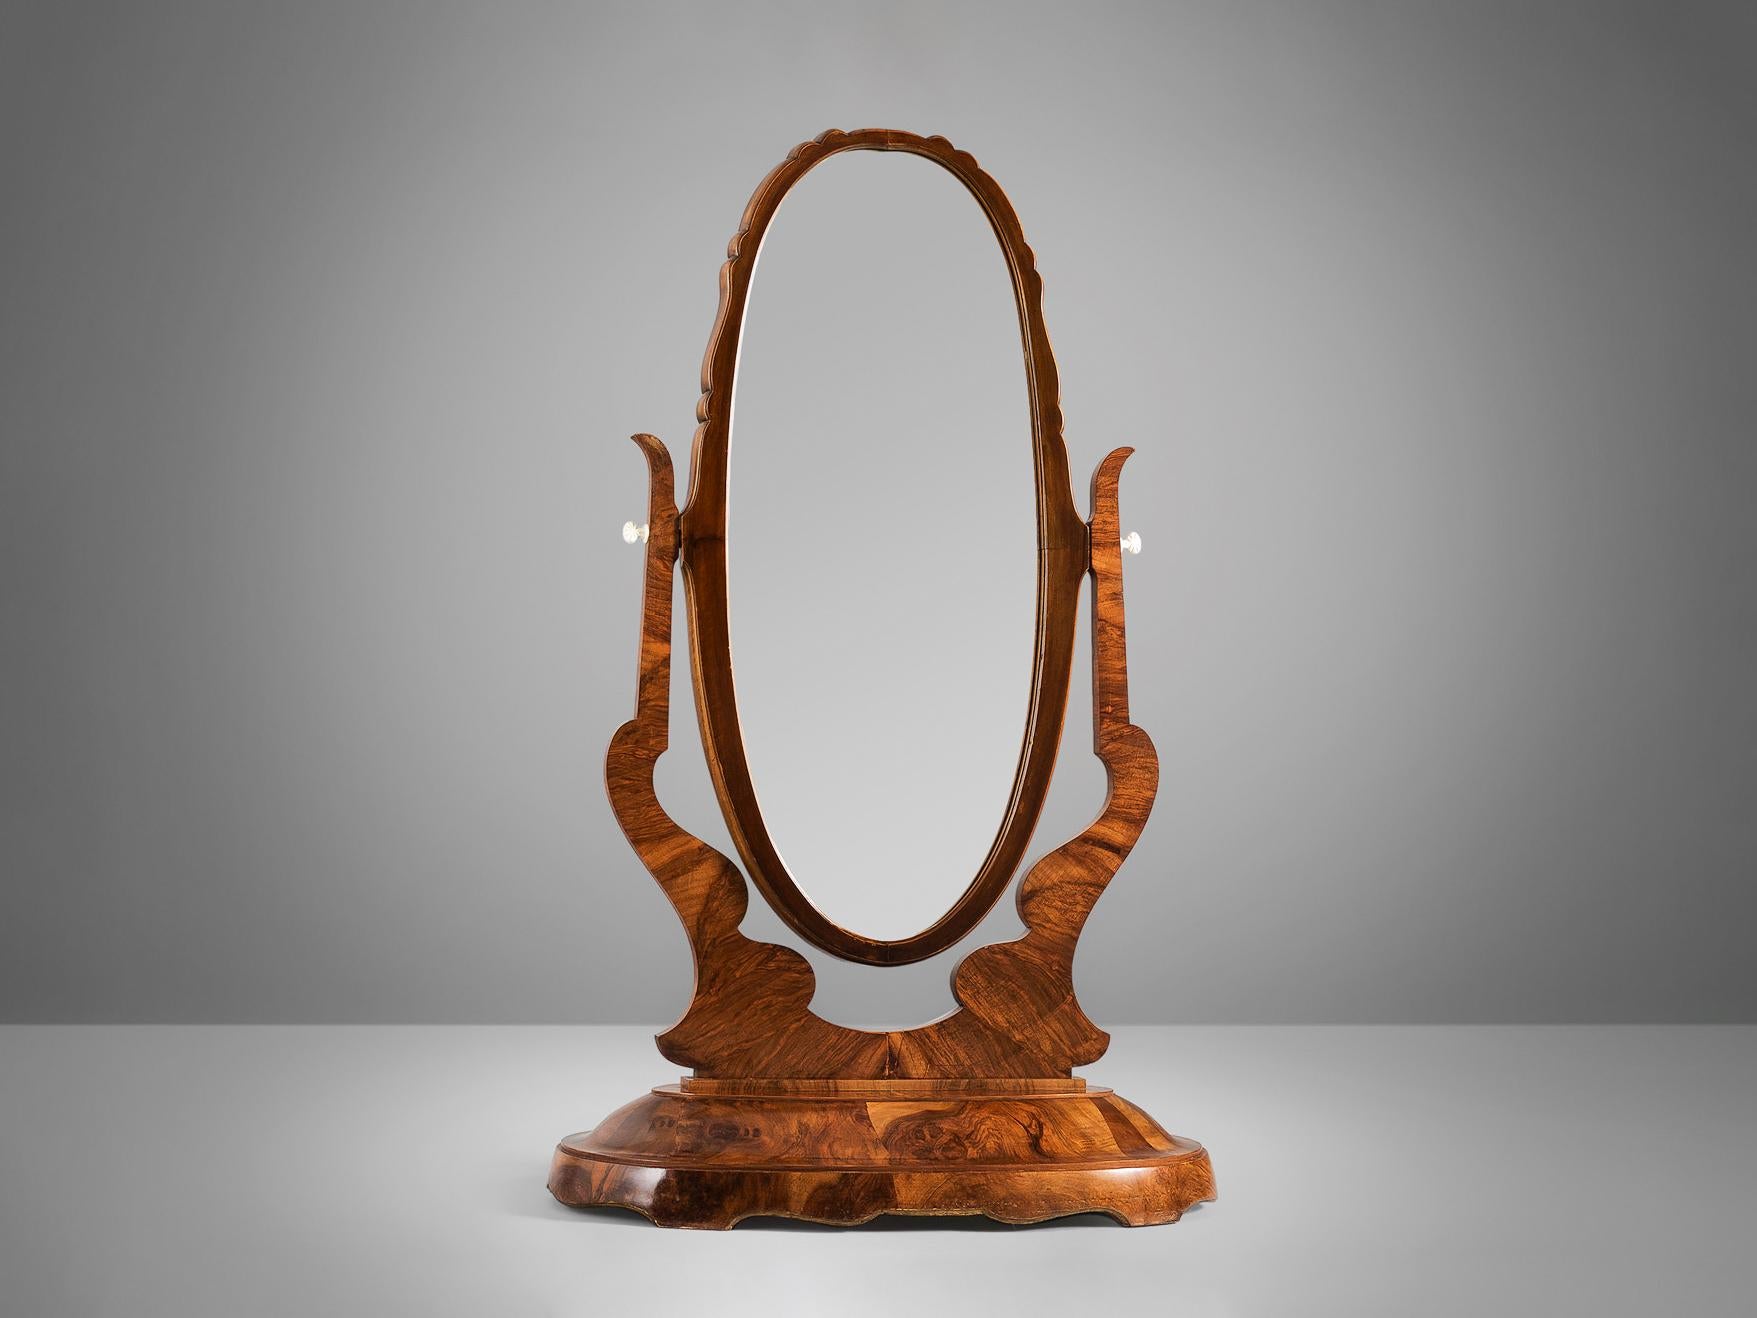 Miroir de toilette, ronce de noyer, verre miroir, Italie, années 1940.

Miroir italien impressionnant et élégant. Le bois présente un grain magnifique et les détails de la ronce de noyer sont très beaux et distinctifs. Le miroir ovale est réglable